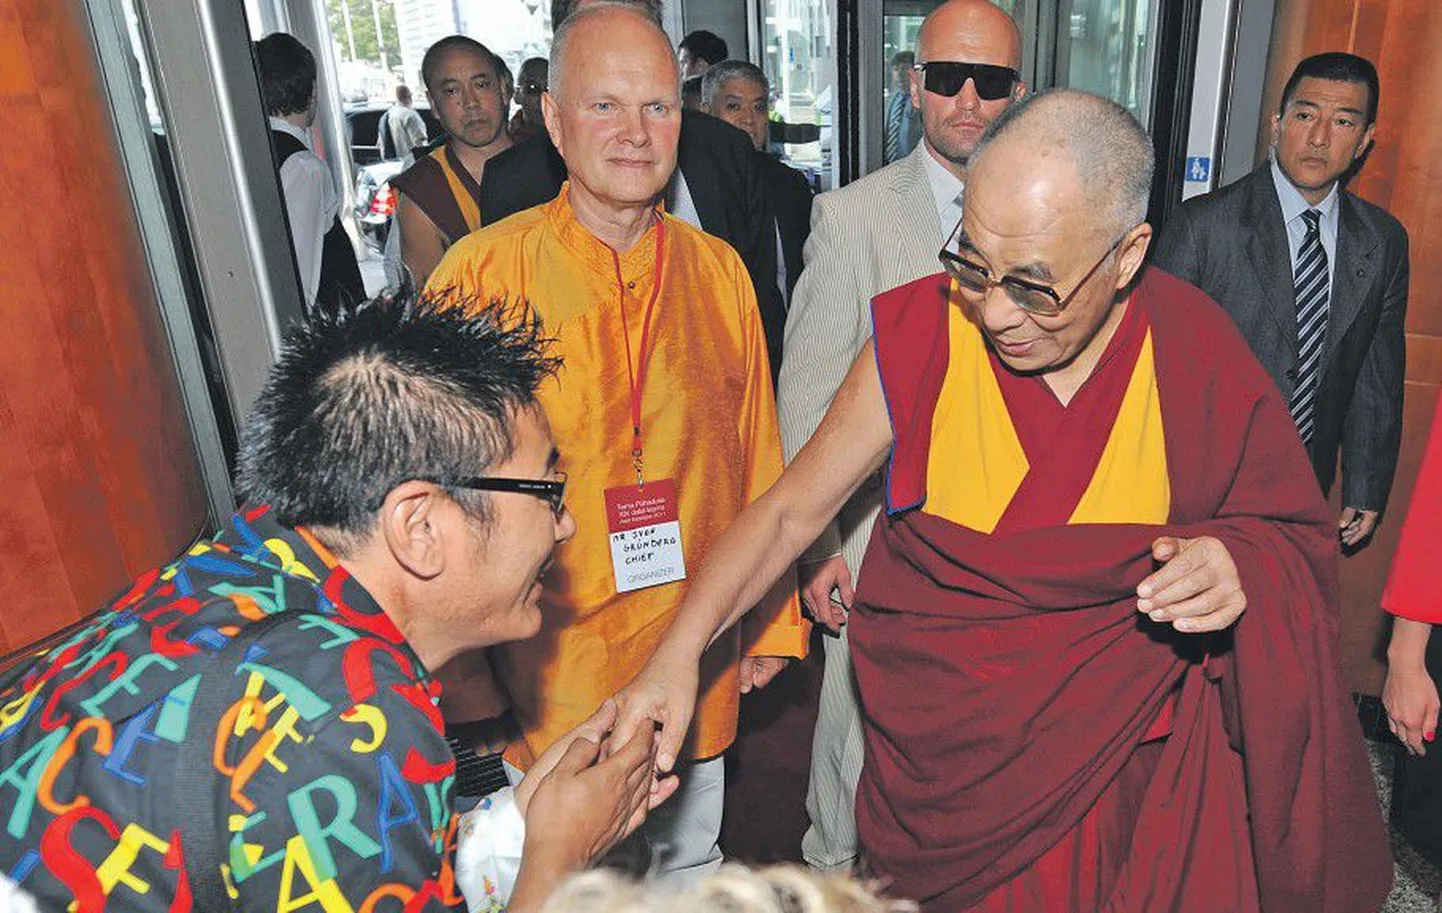 Выходец из Тибета Пенп Церинг, специально приехавший в Таллинн из Великобритании, счастлив увидеть Далай-ламу и пожать ему руку.